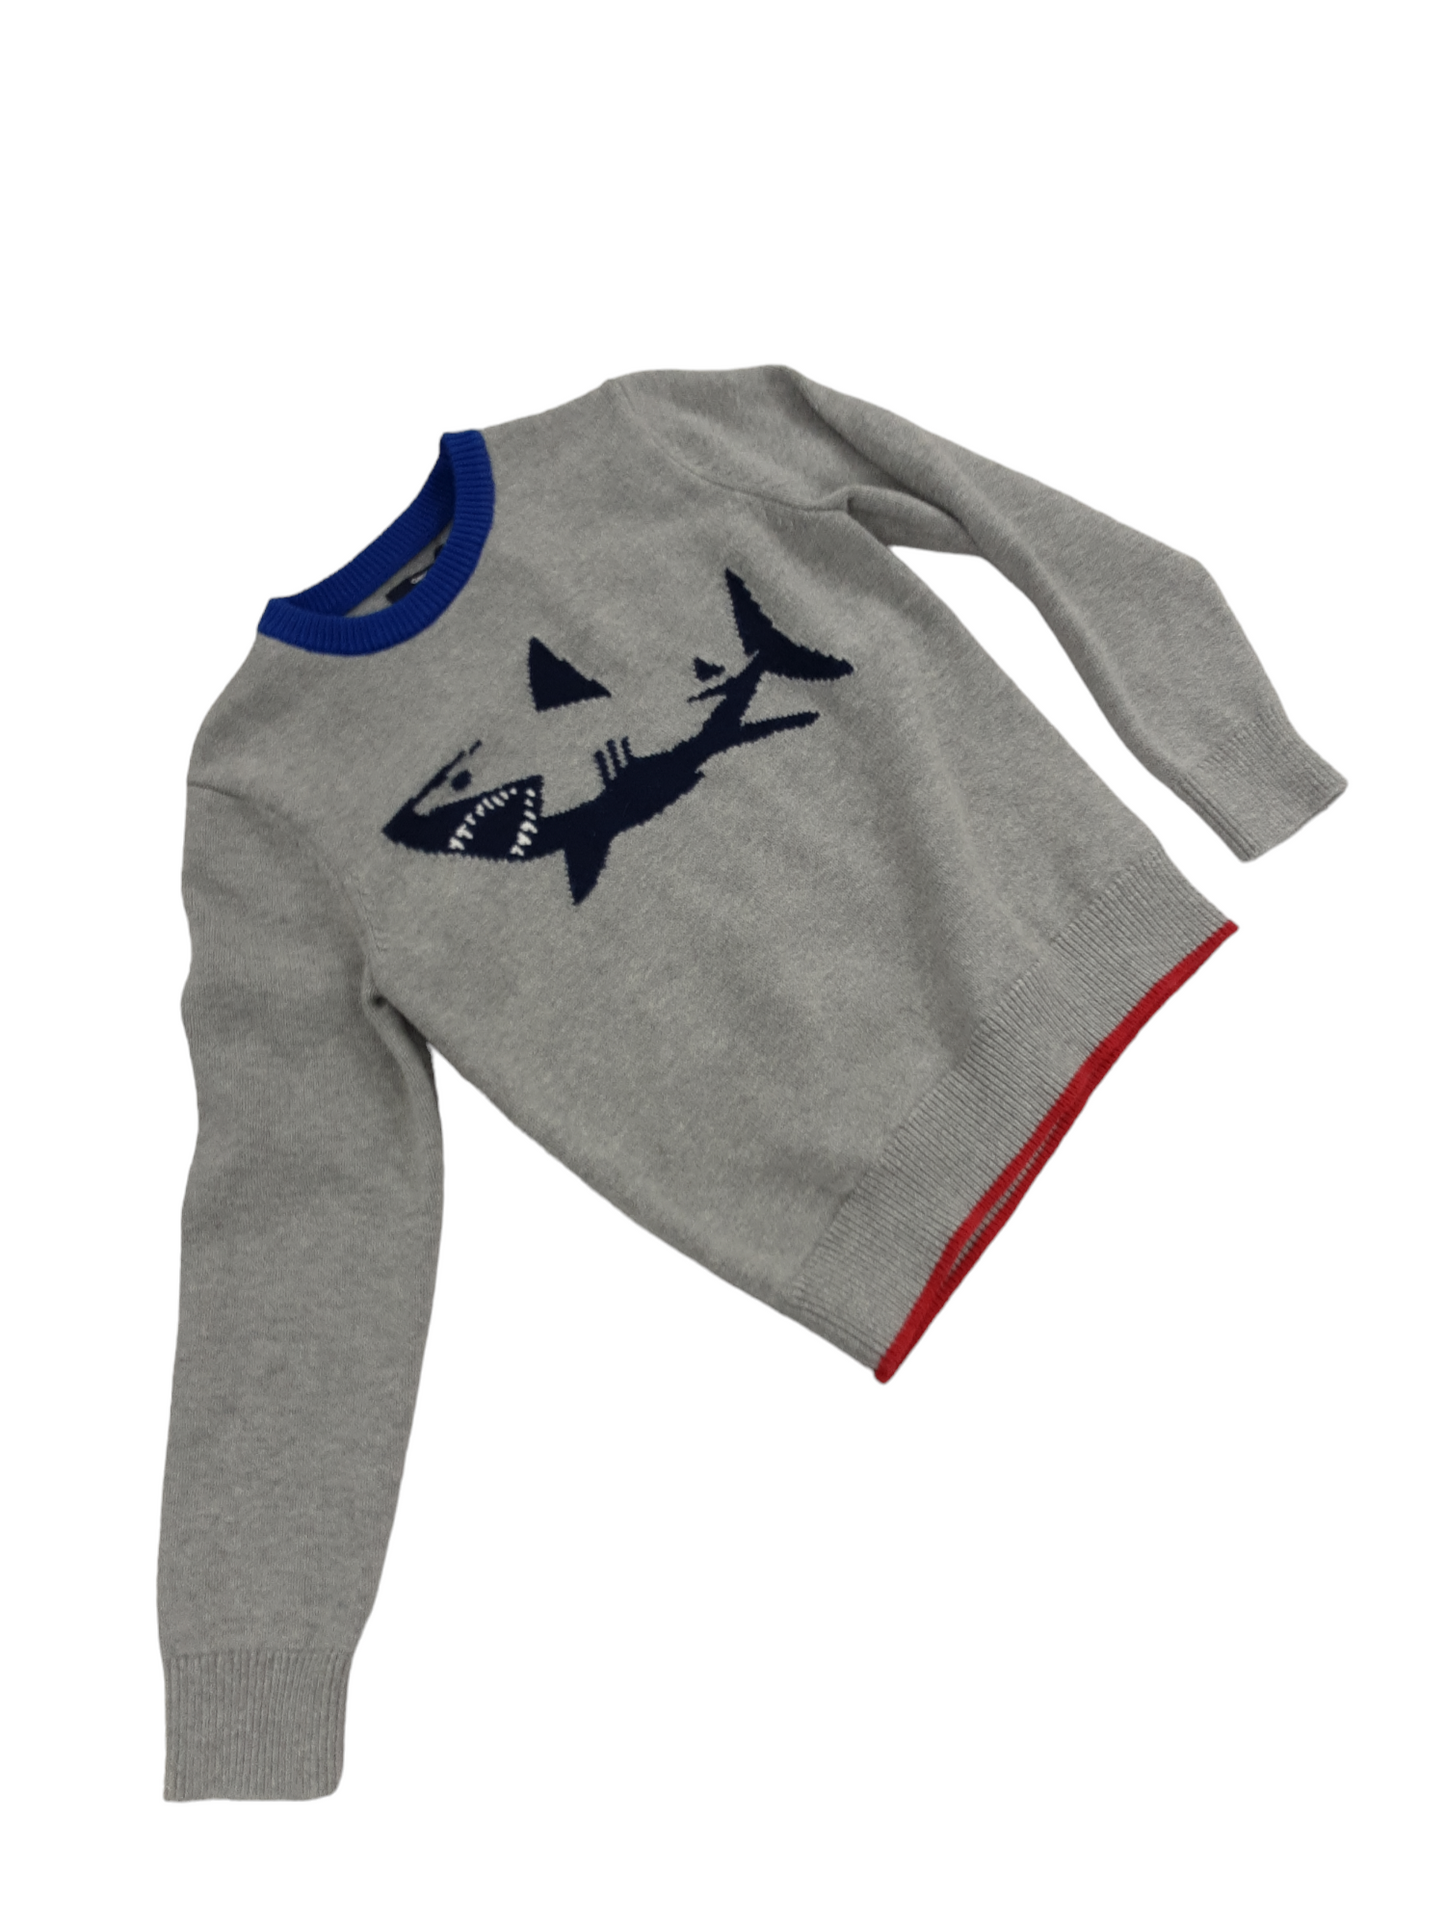 Warm shark sweater size 10